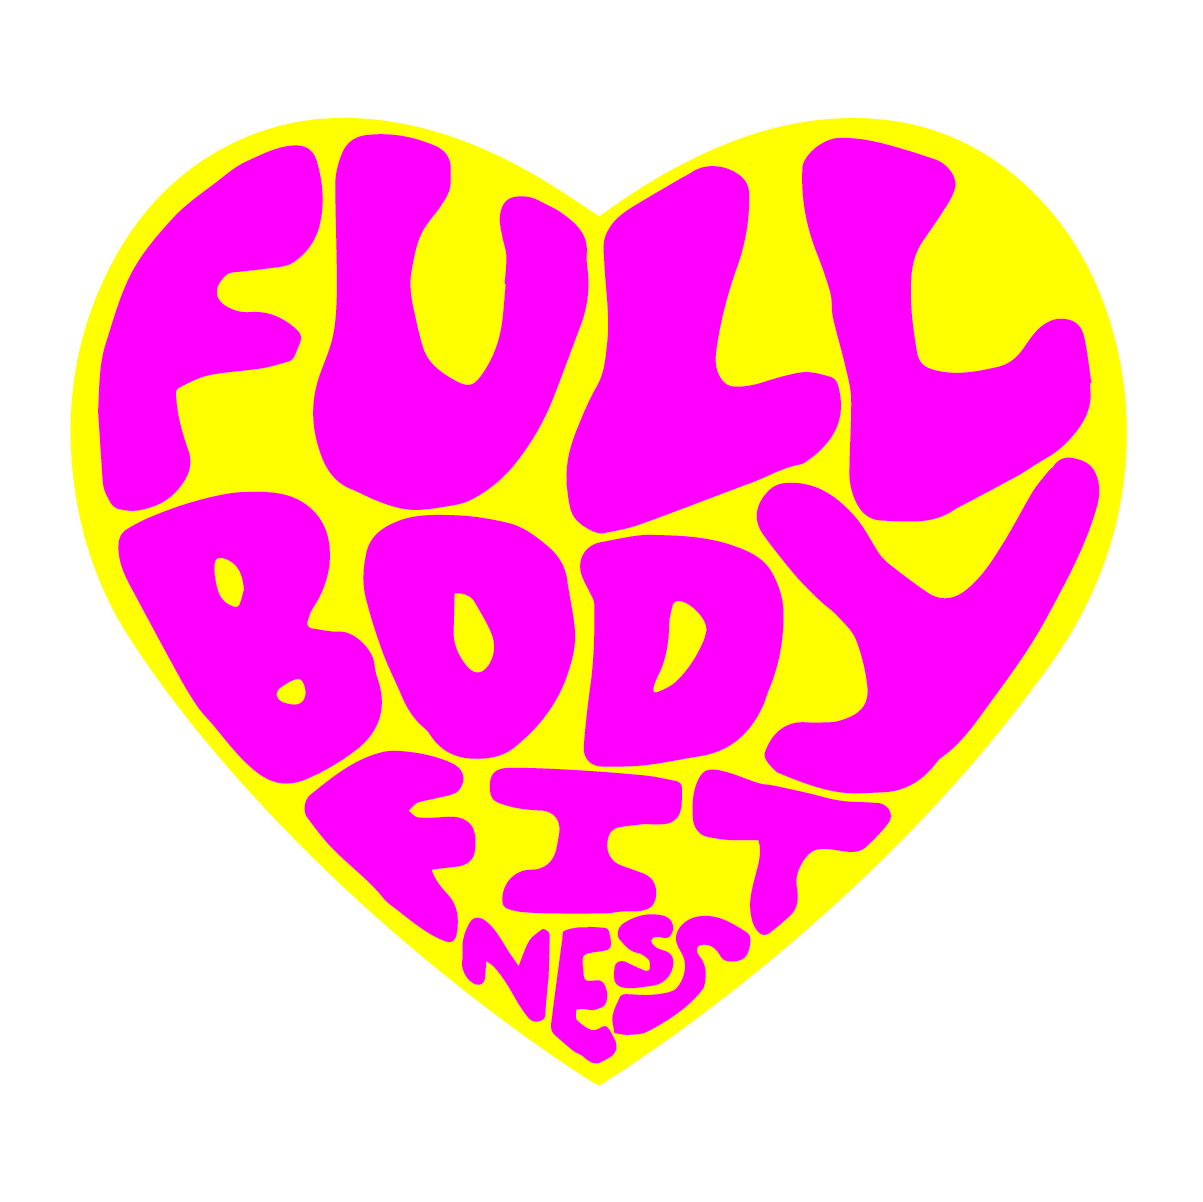 Full Body Fitness